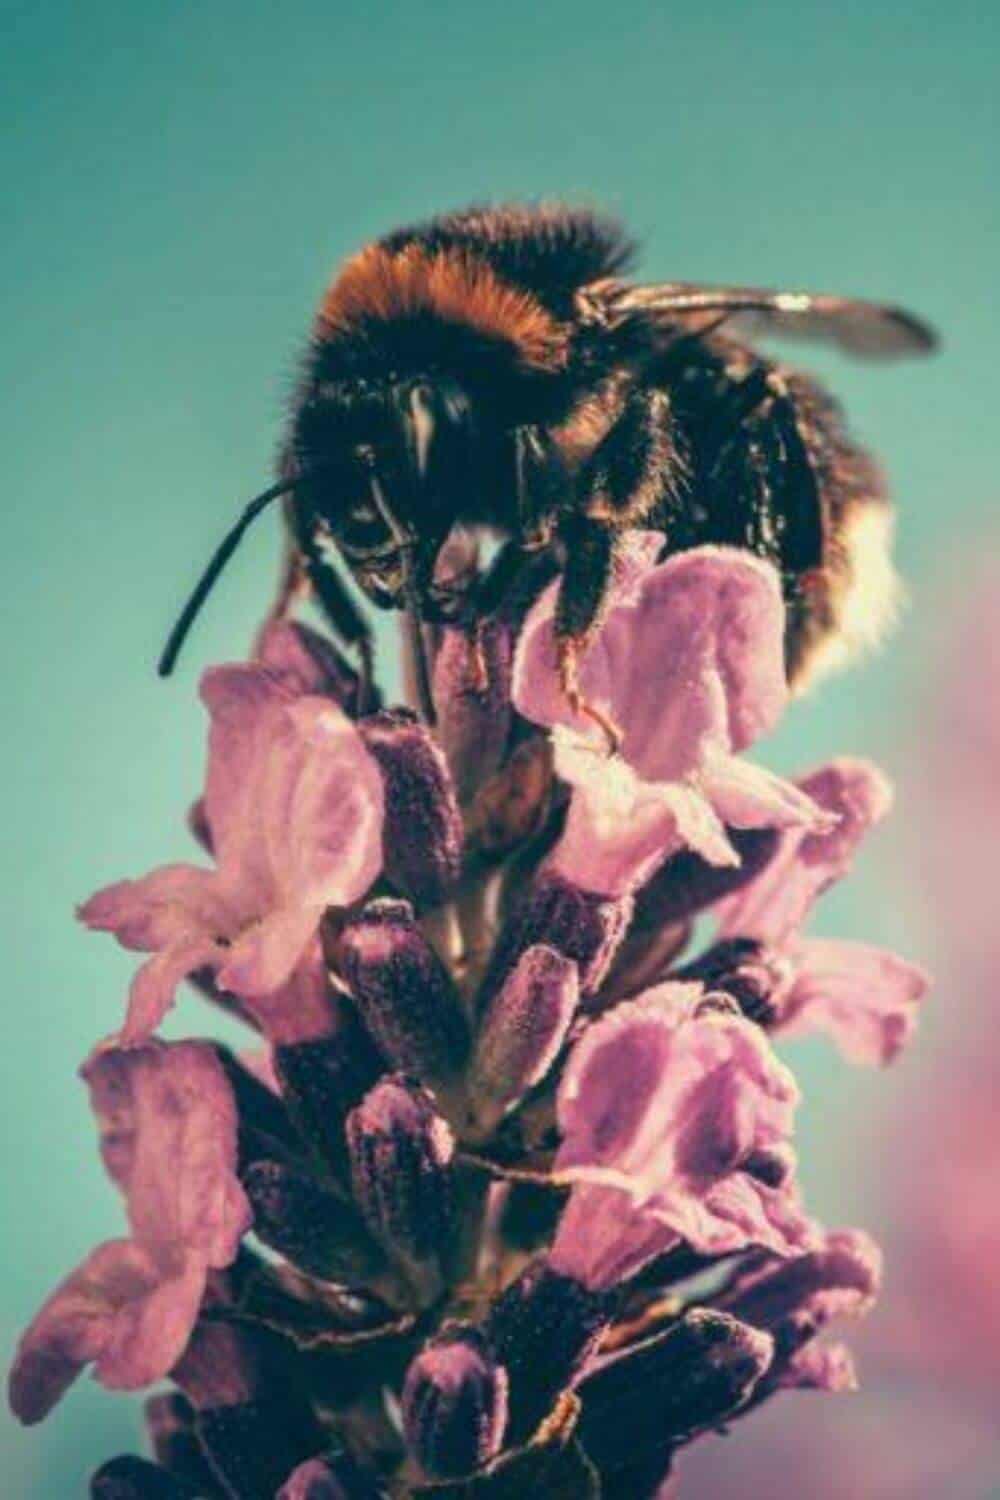 再生农业帮助蜜蜂在加州通过最美味的蜂蜜蜂蜜!# Regenerativeagriculture # goldencoastmead